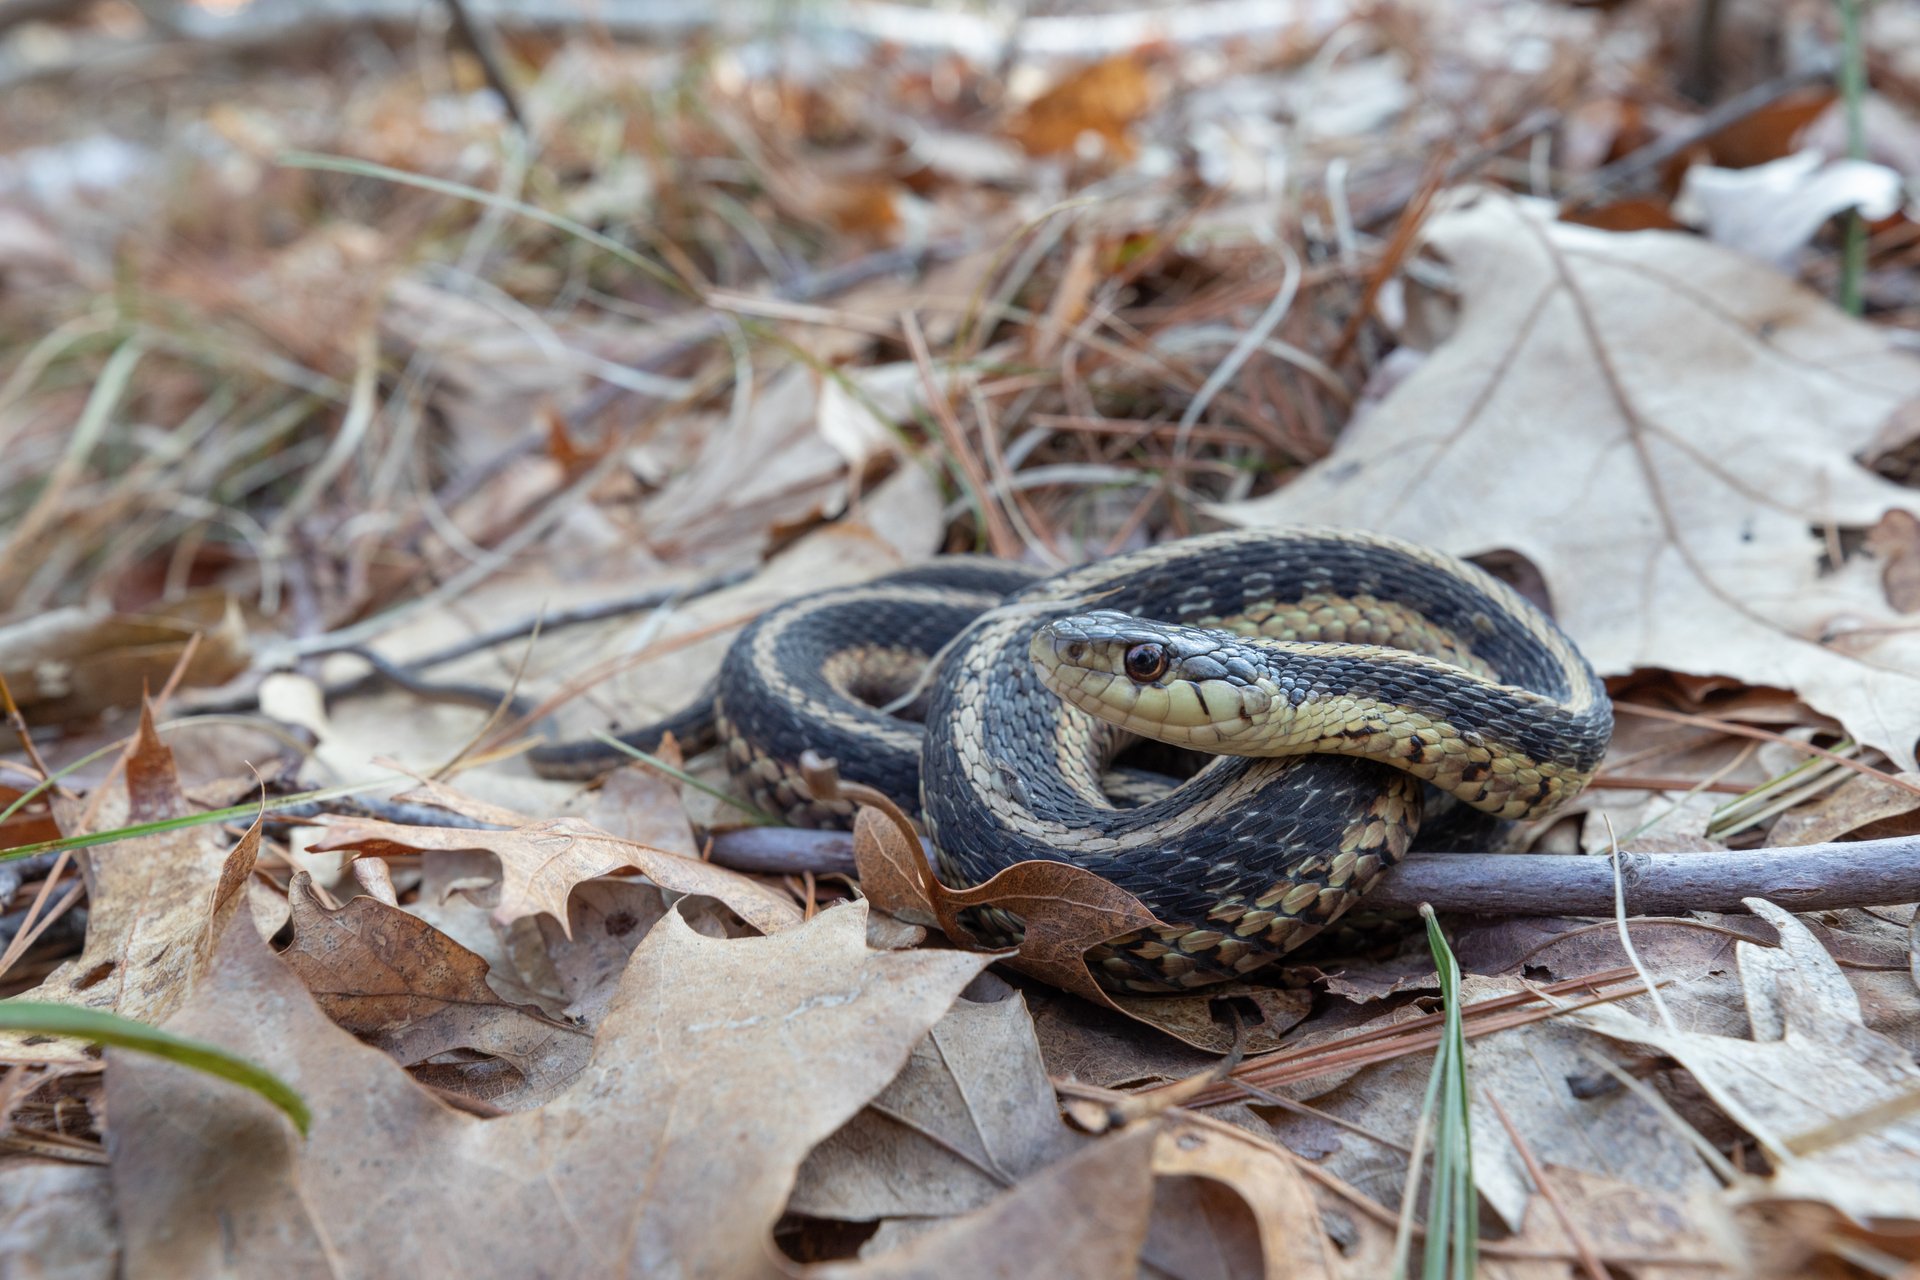 Garter Snake curled up on brown leaves